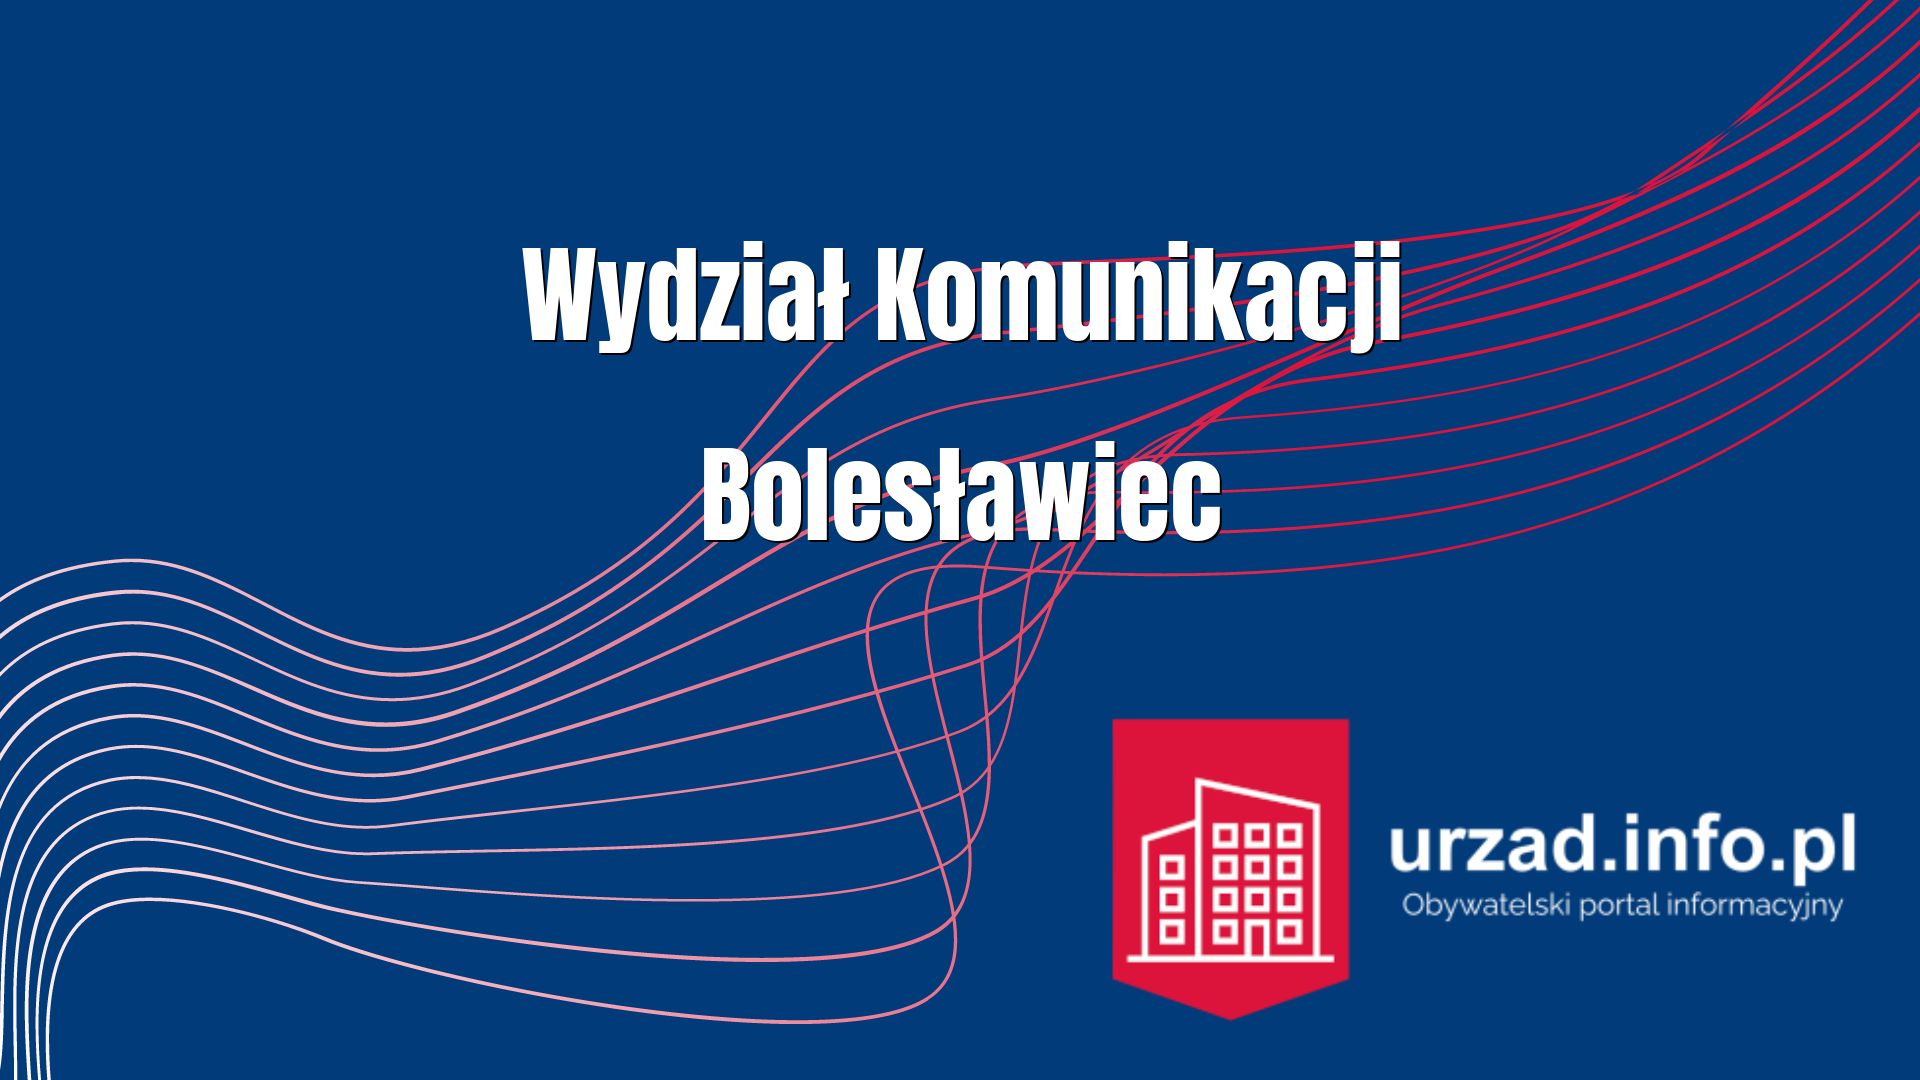 Wydział Komunikacji Bolesławiec